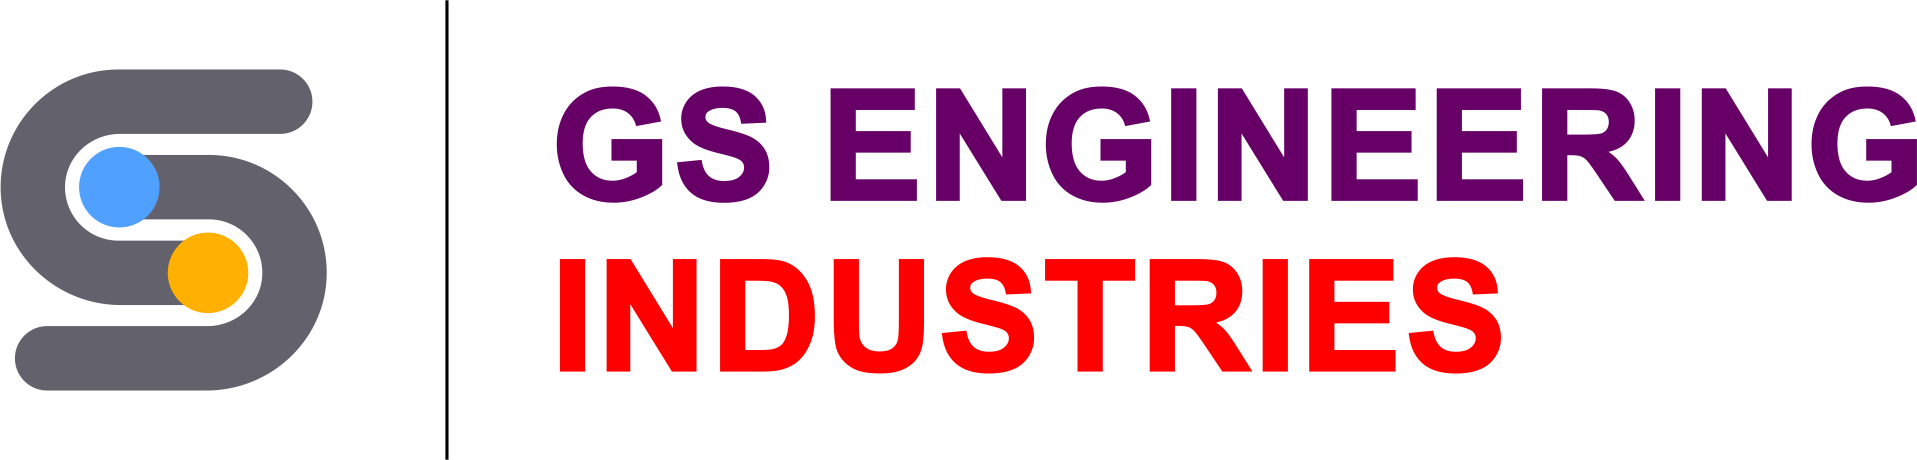 GS Engineering Industries